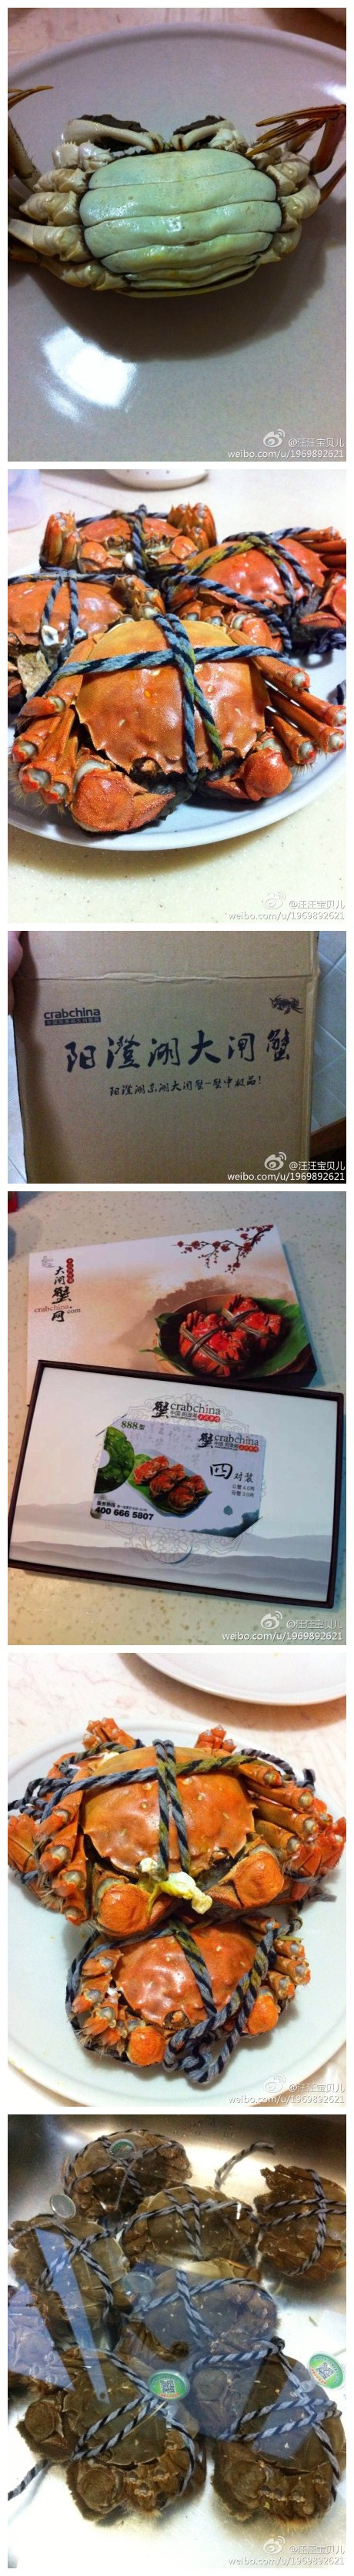 今天的蟹是从@阳澄湖大闸蟹网 订购的888型礼品卡